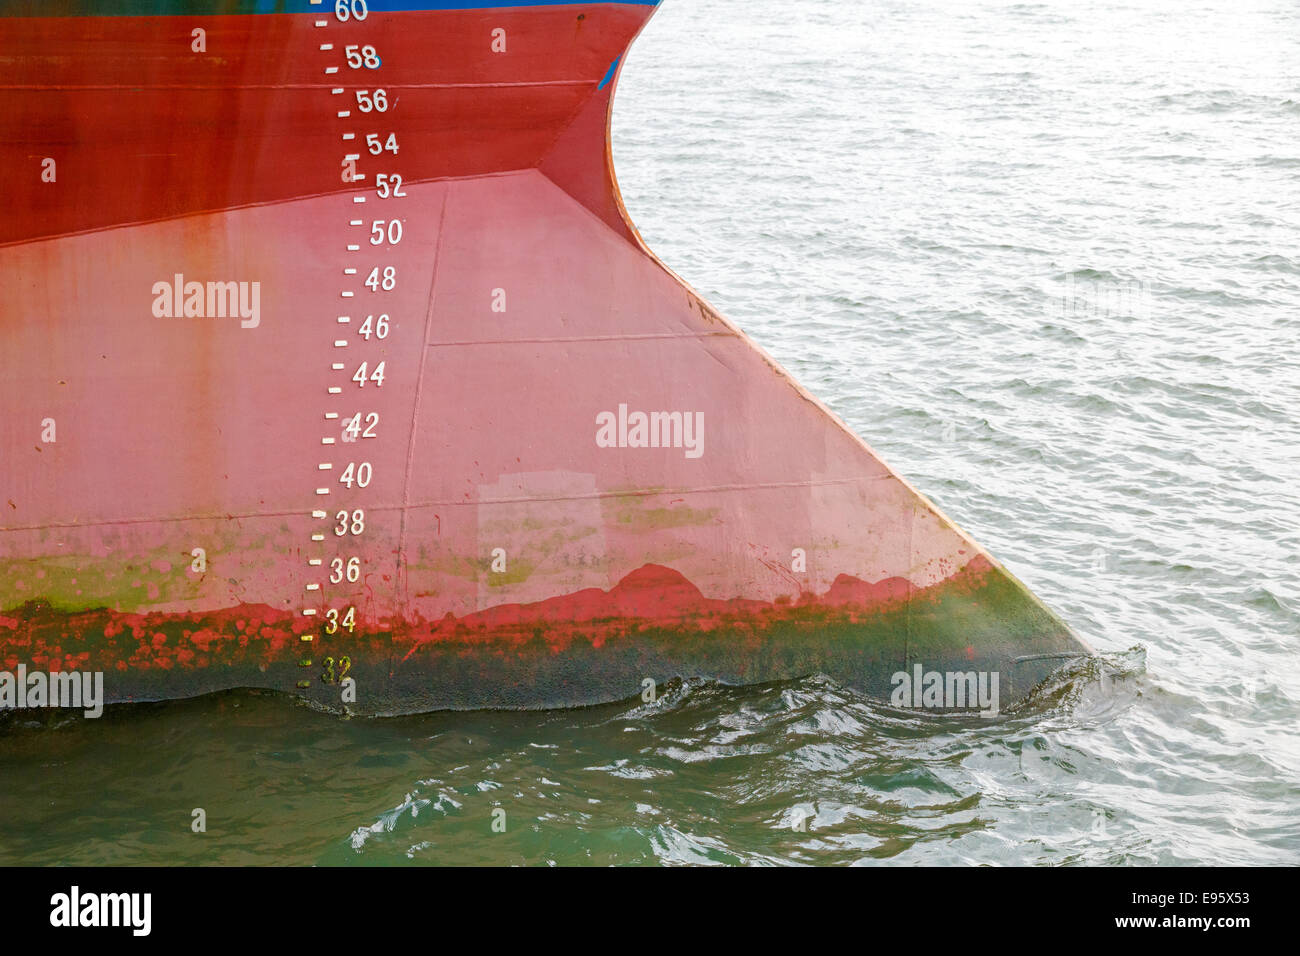 Projet de marques sur arc rouge de grand bateau Banque D'Images